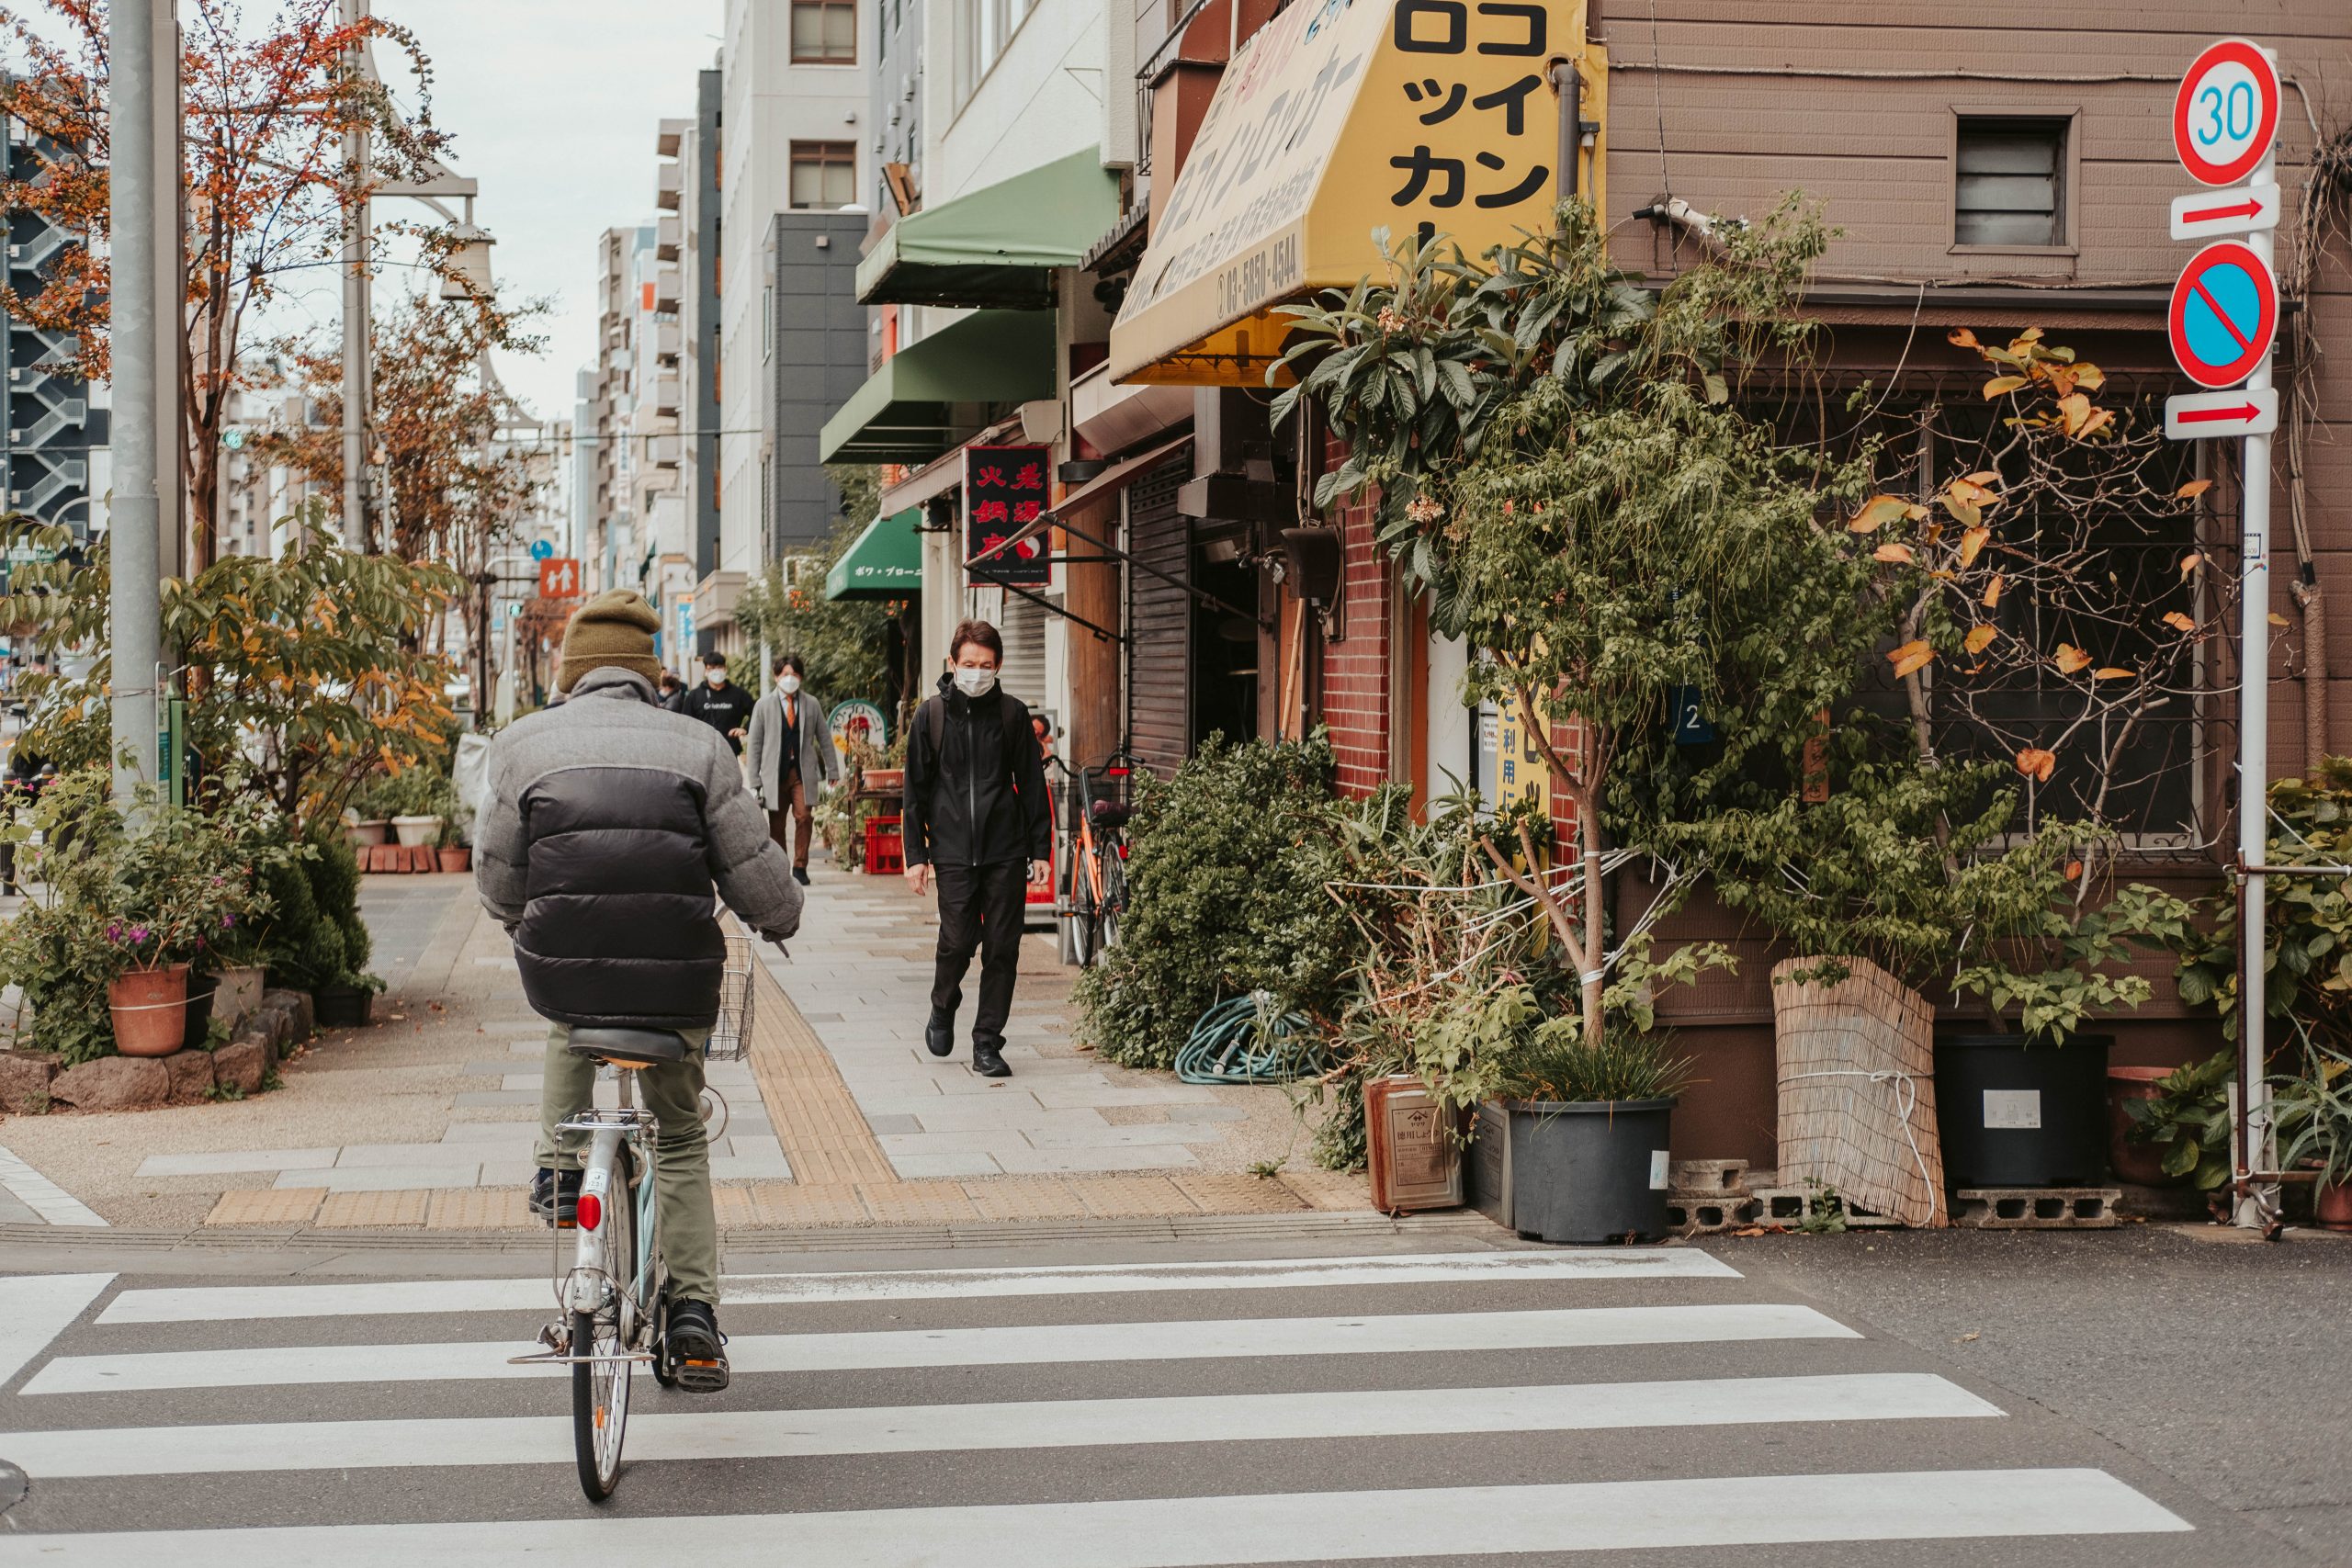 Tokyo's locals wander around